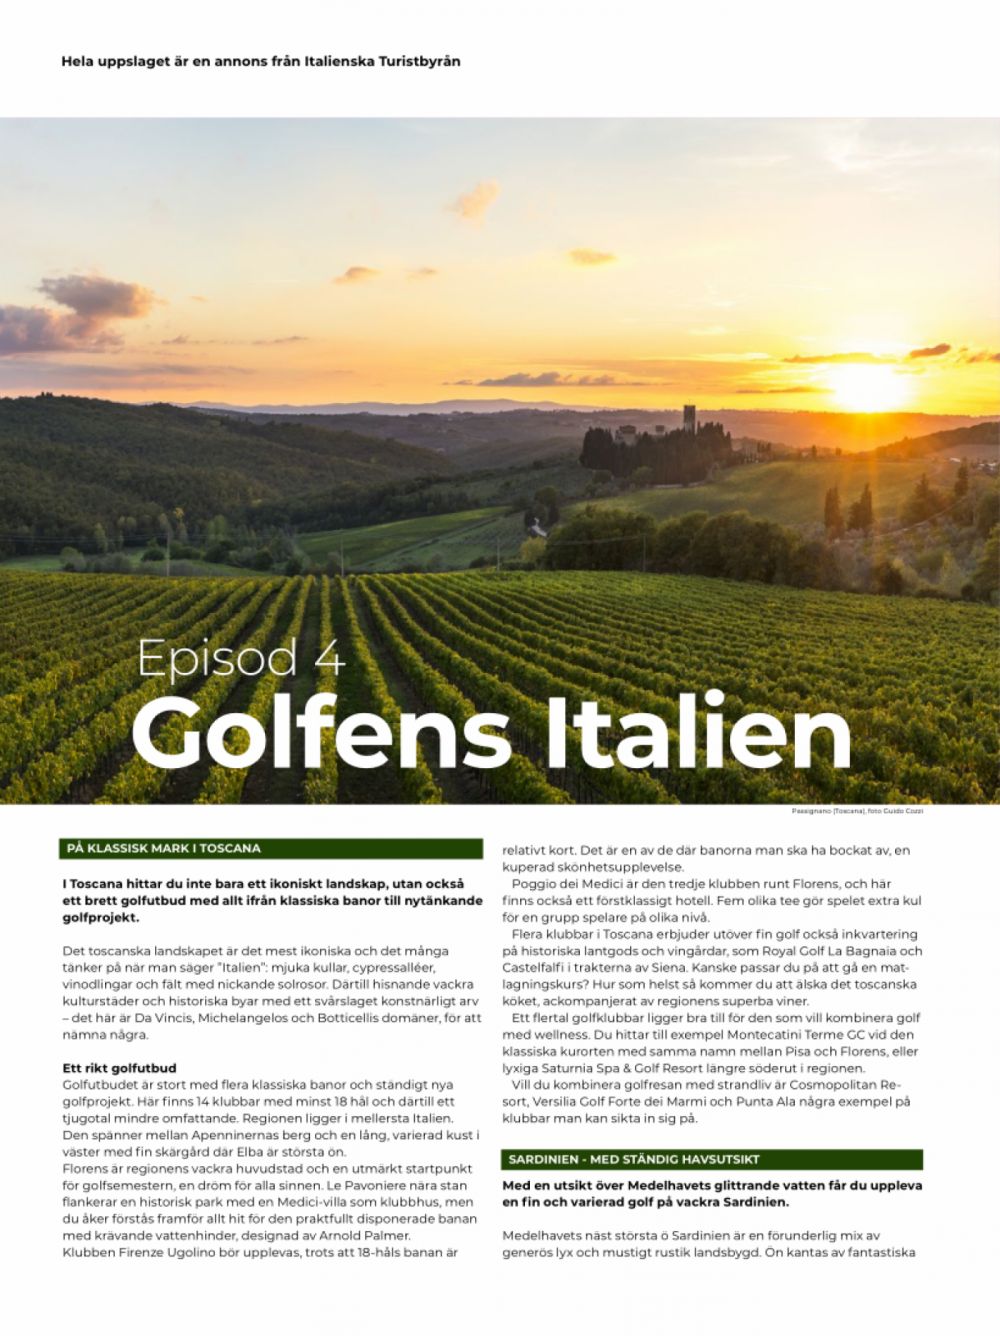 Scopriamo l'Italia golfistica - Sardegna & Toscana - Stoccolma